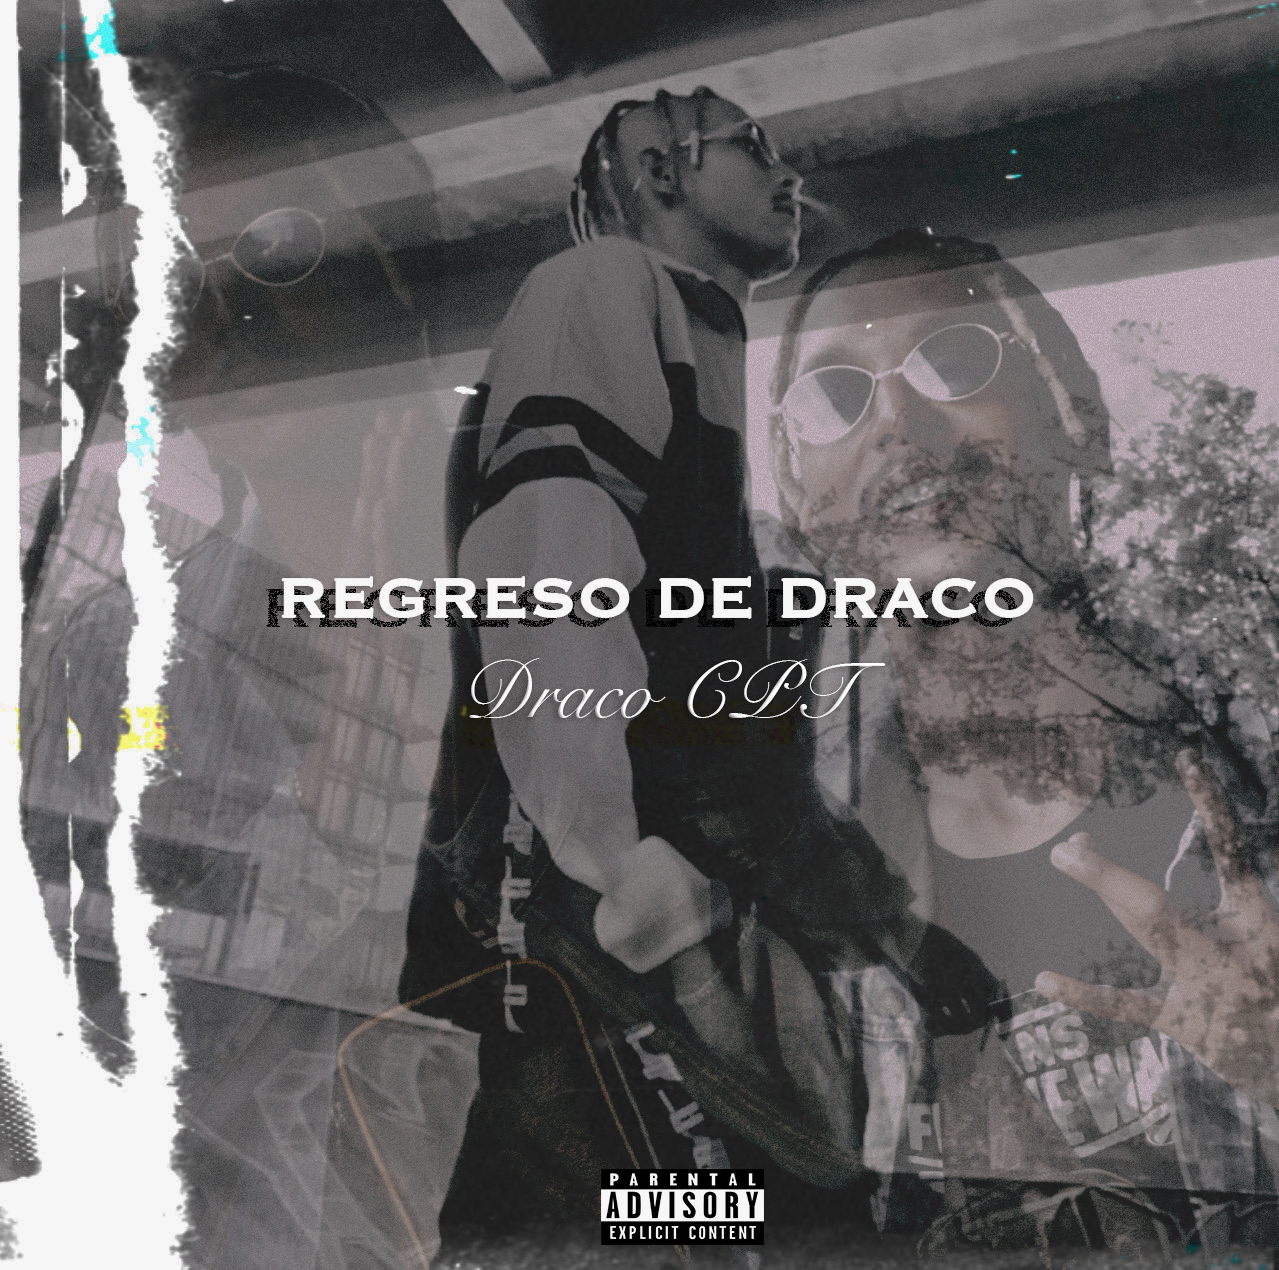 Rapper Draco_Cpt Releases Debut EP 'Regreso De Draco' 